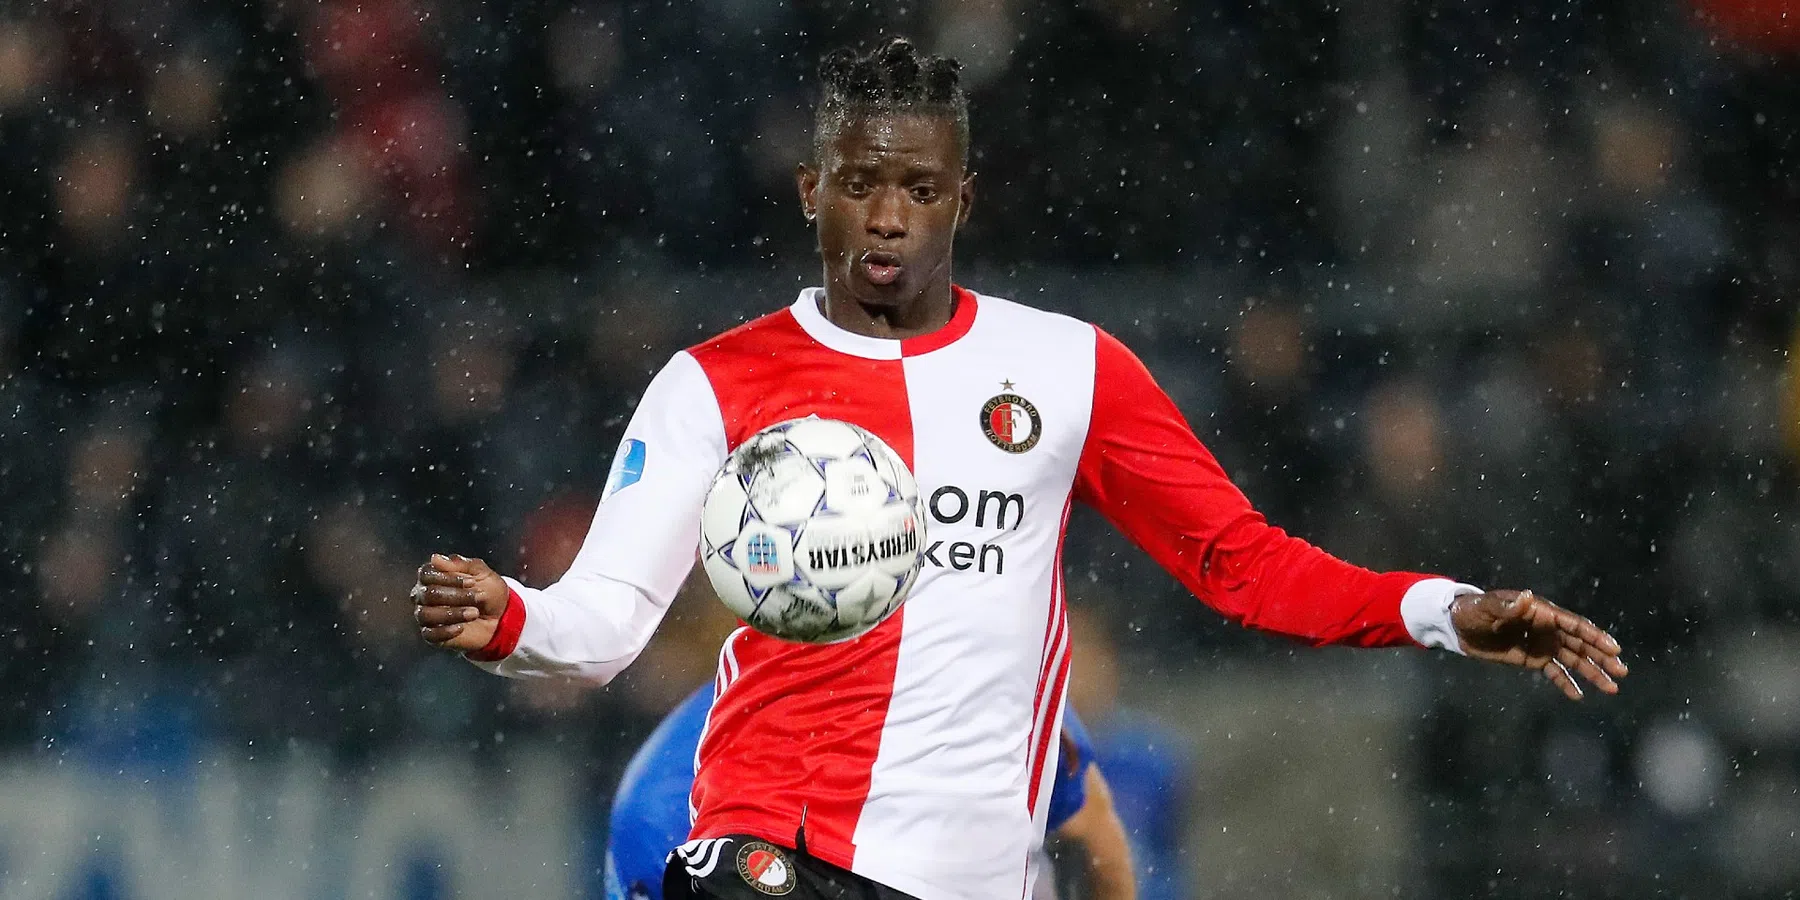 Voormalig Feyenoord-verdediger Edgar Ié is hoofdverdachte in een opmerkelijke zaak